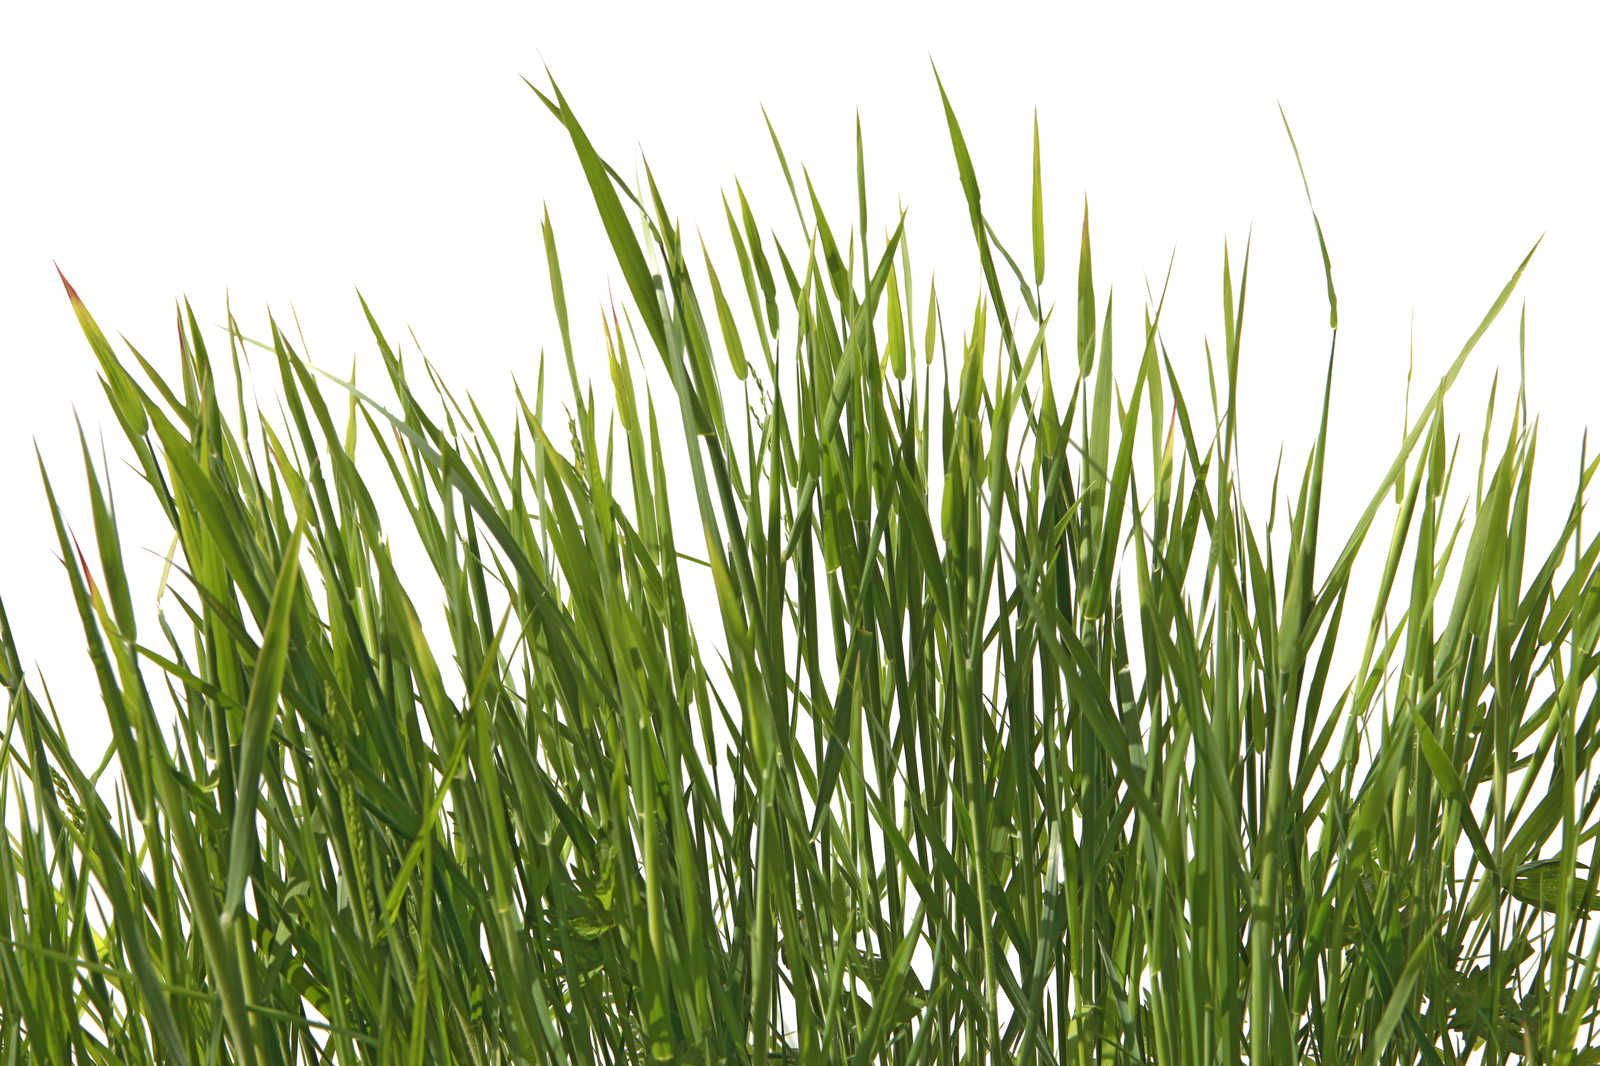             Toile Détail d'herbes avec fond blanc - 0,90 m x 0,60 m
        